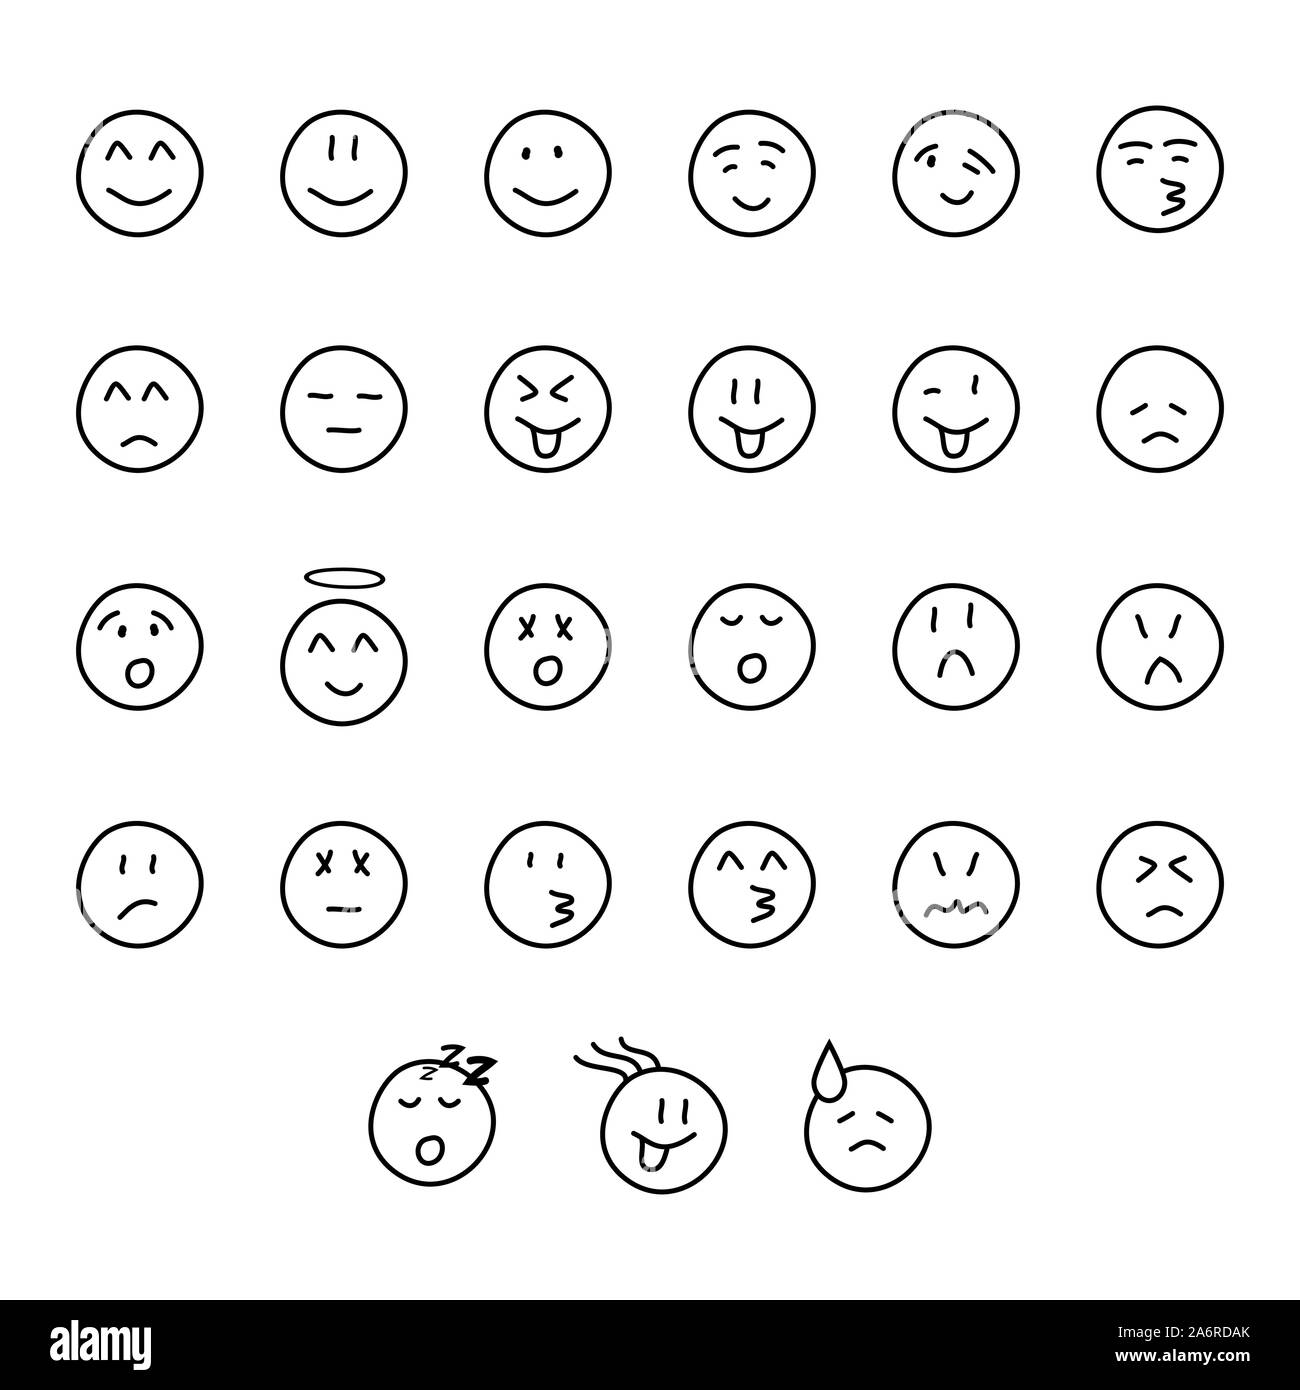 Conjunto de caras sonrientes lindo dibujados a mano con diferentes expresiones faciales y emociones Ilustración del Vector